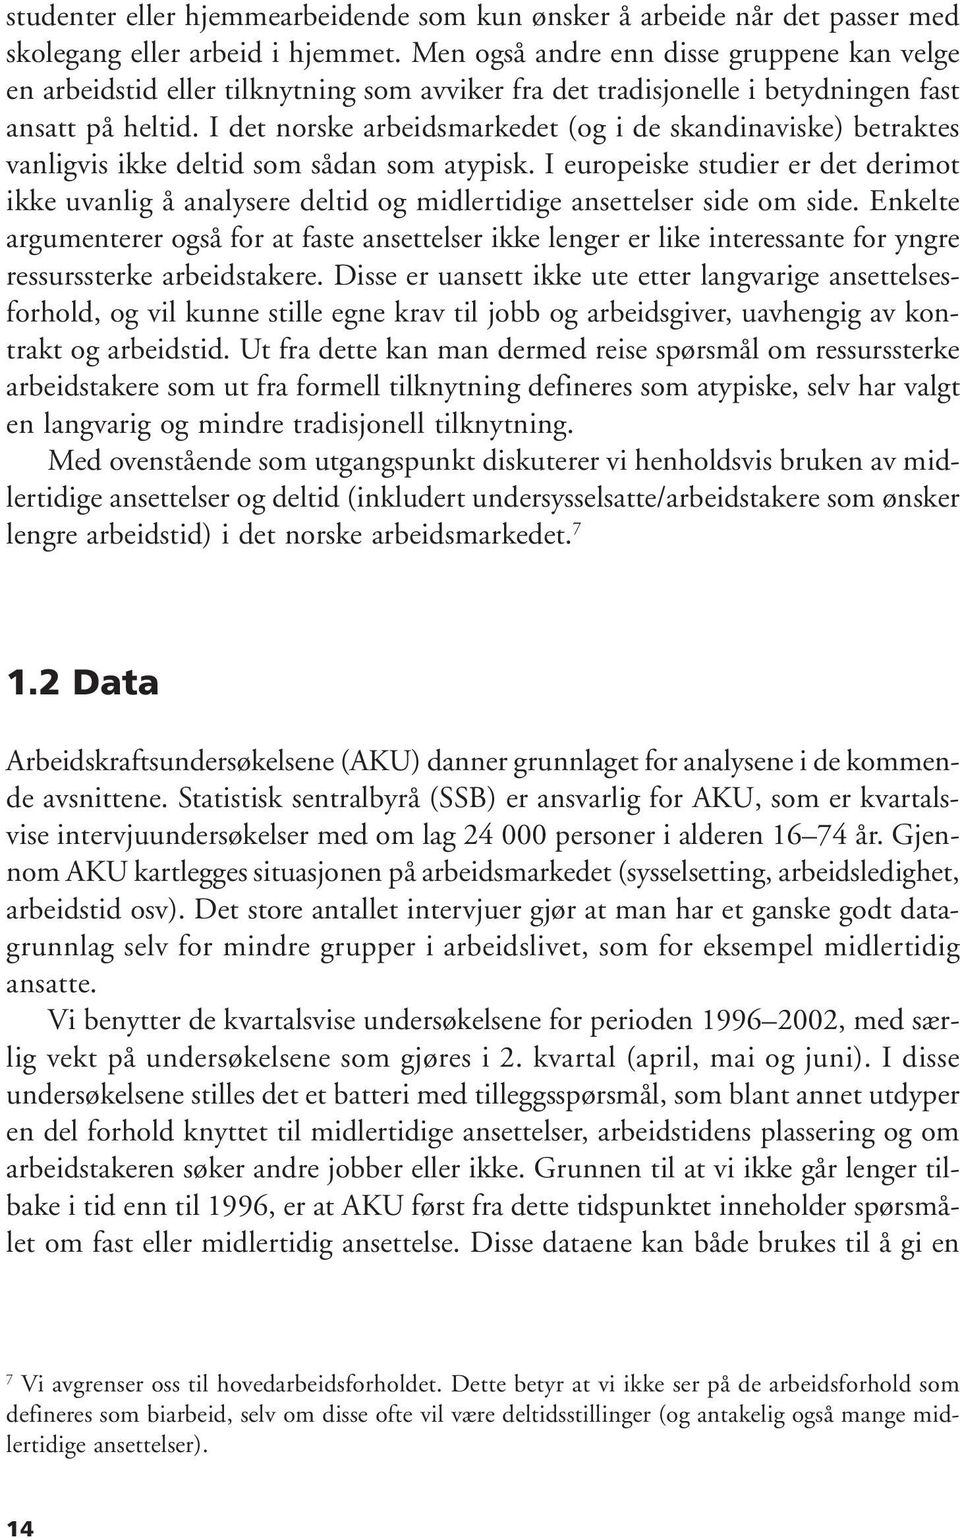 I det norske arbeidsmarkedet (og i de skandinaviske) betraktes vanligvis ikke deltid som sådan som atypisk.